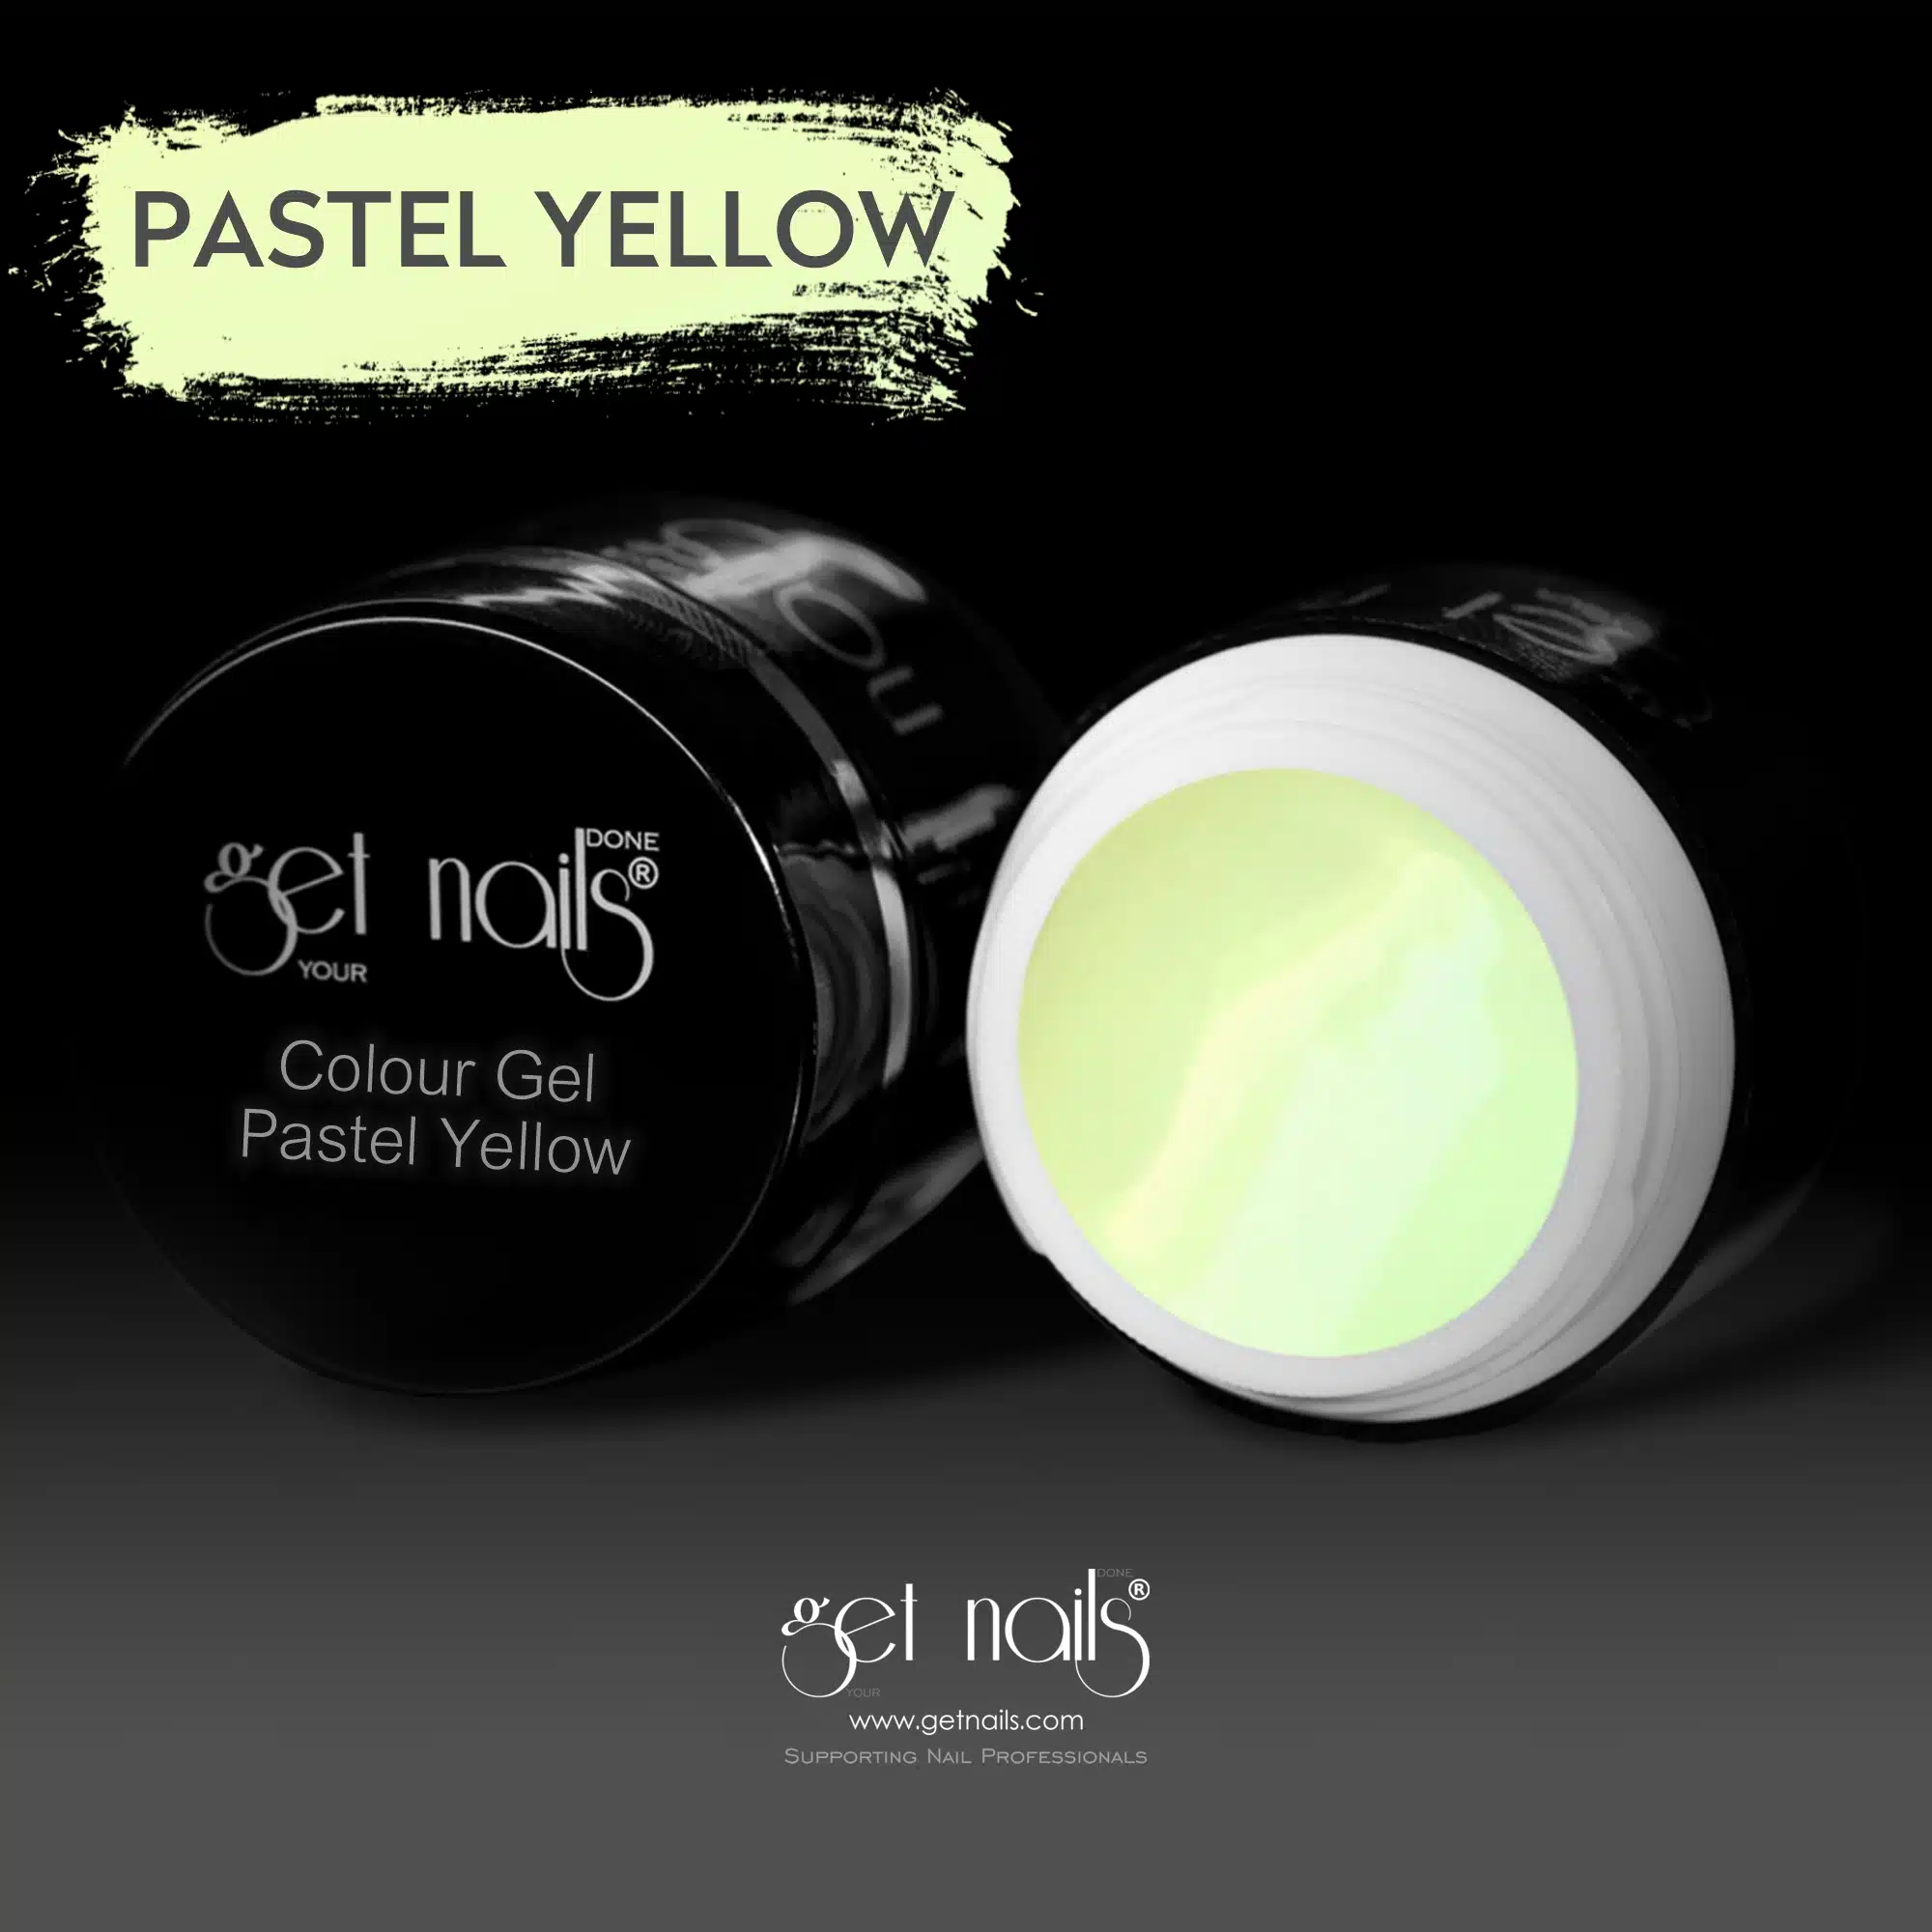 Get Nails Austria - Color Gel Pastel Yellow 5g